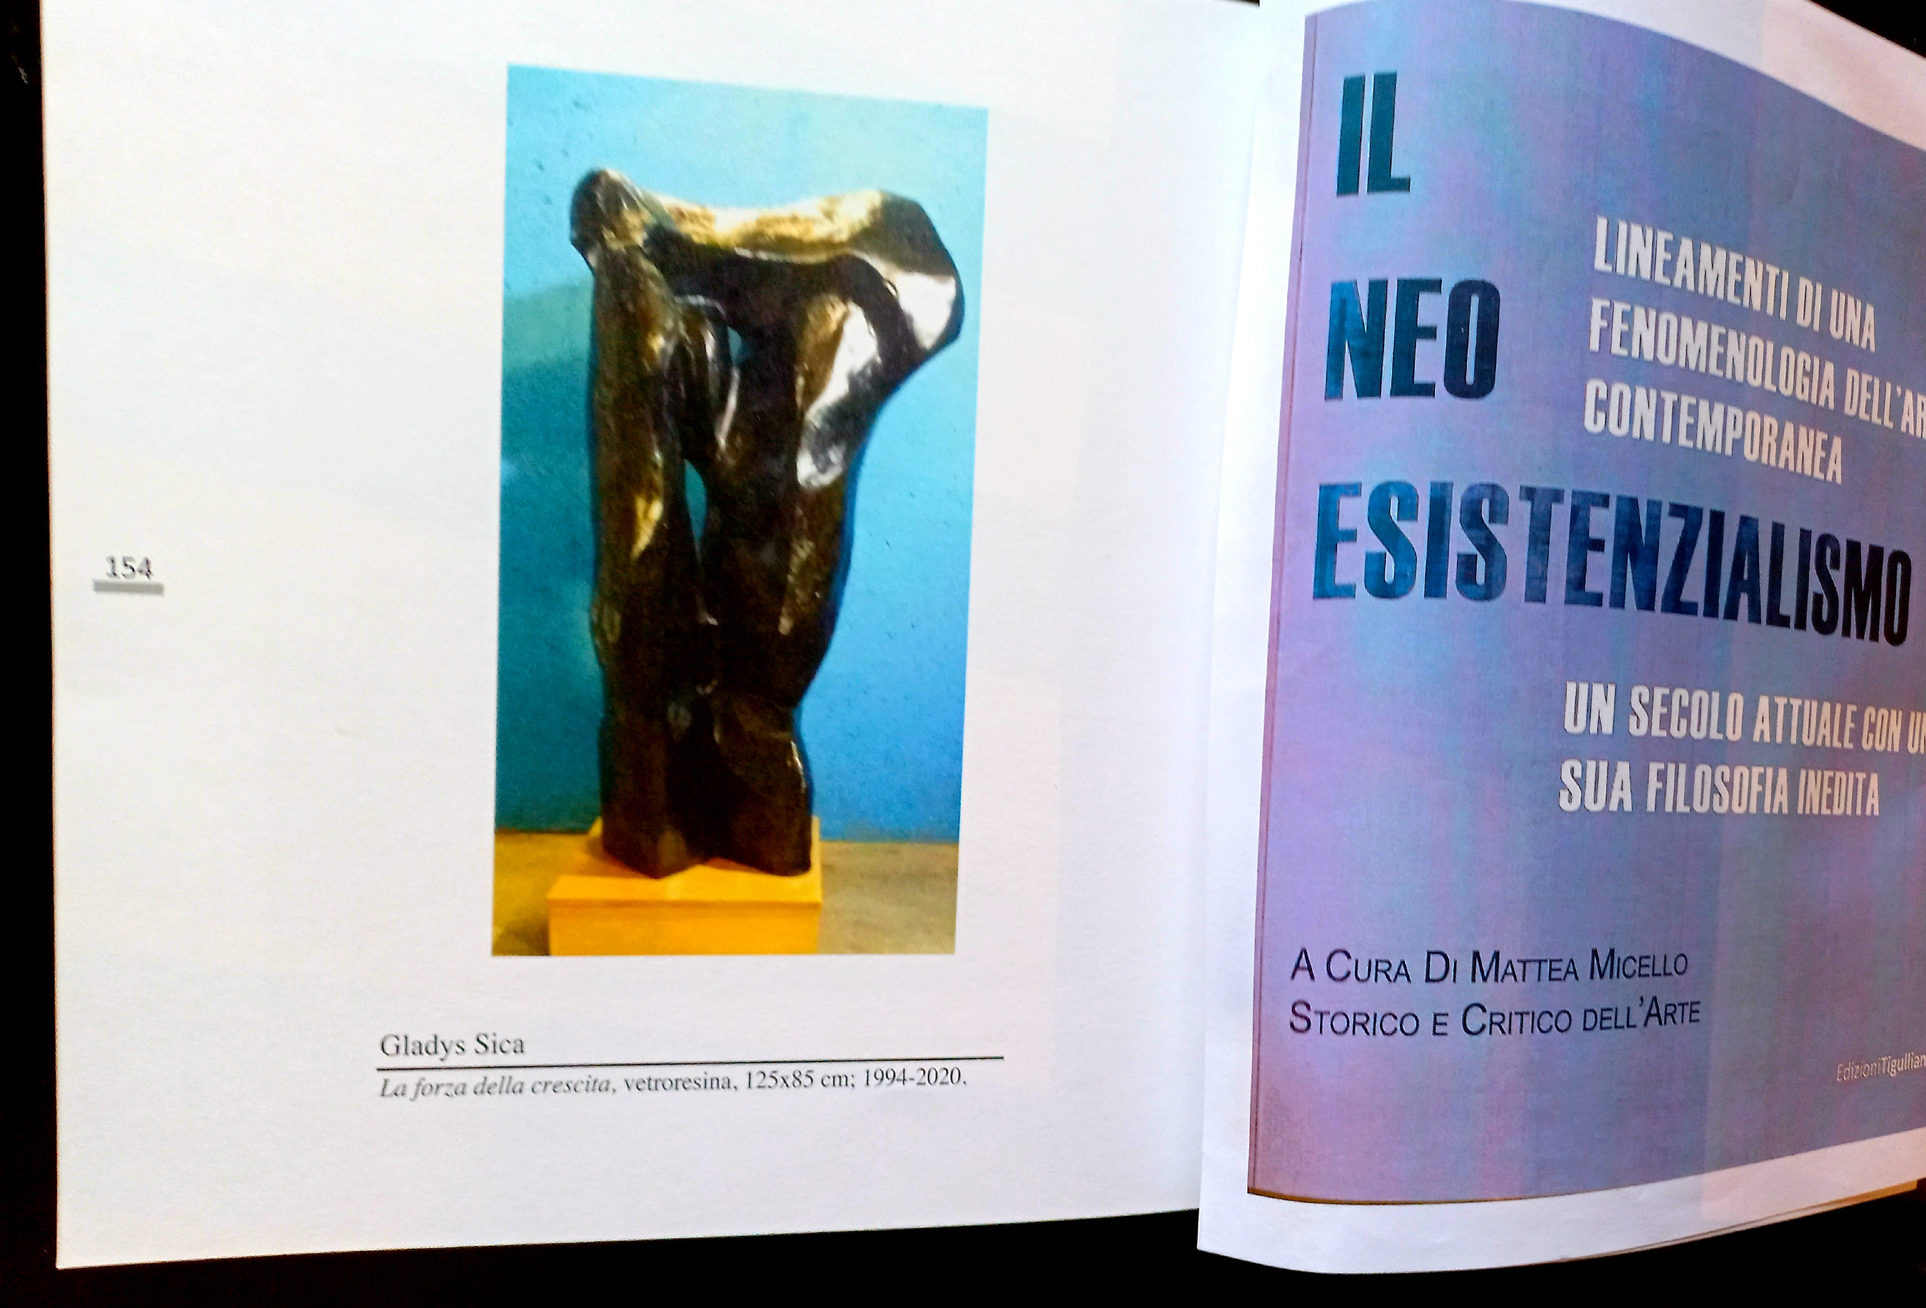 2021 - Catalogo 'Il neo esistenzialismo' a cura di Mattea Micello, Edizioni Tigulliana, opera pubblicata 'La forza della crescita' vetroresina su acero,125x85x45